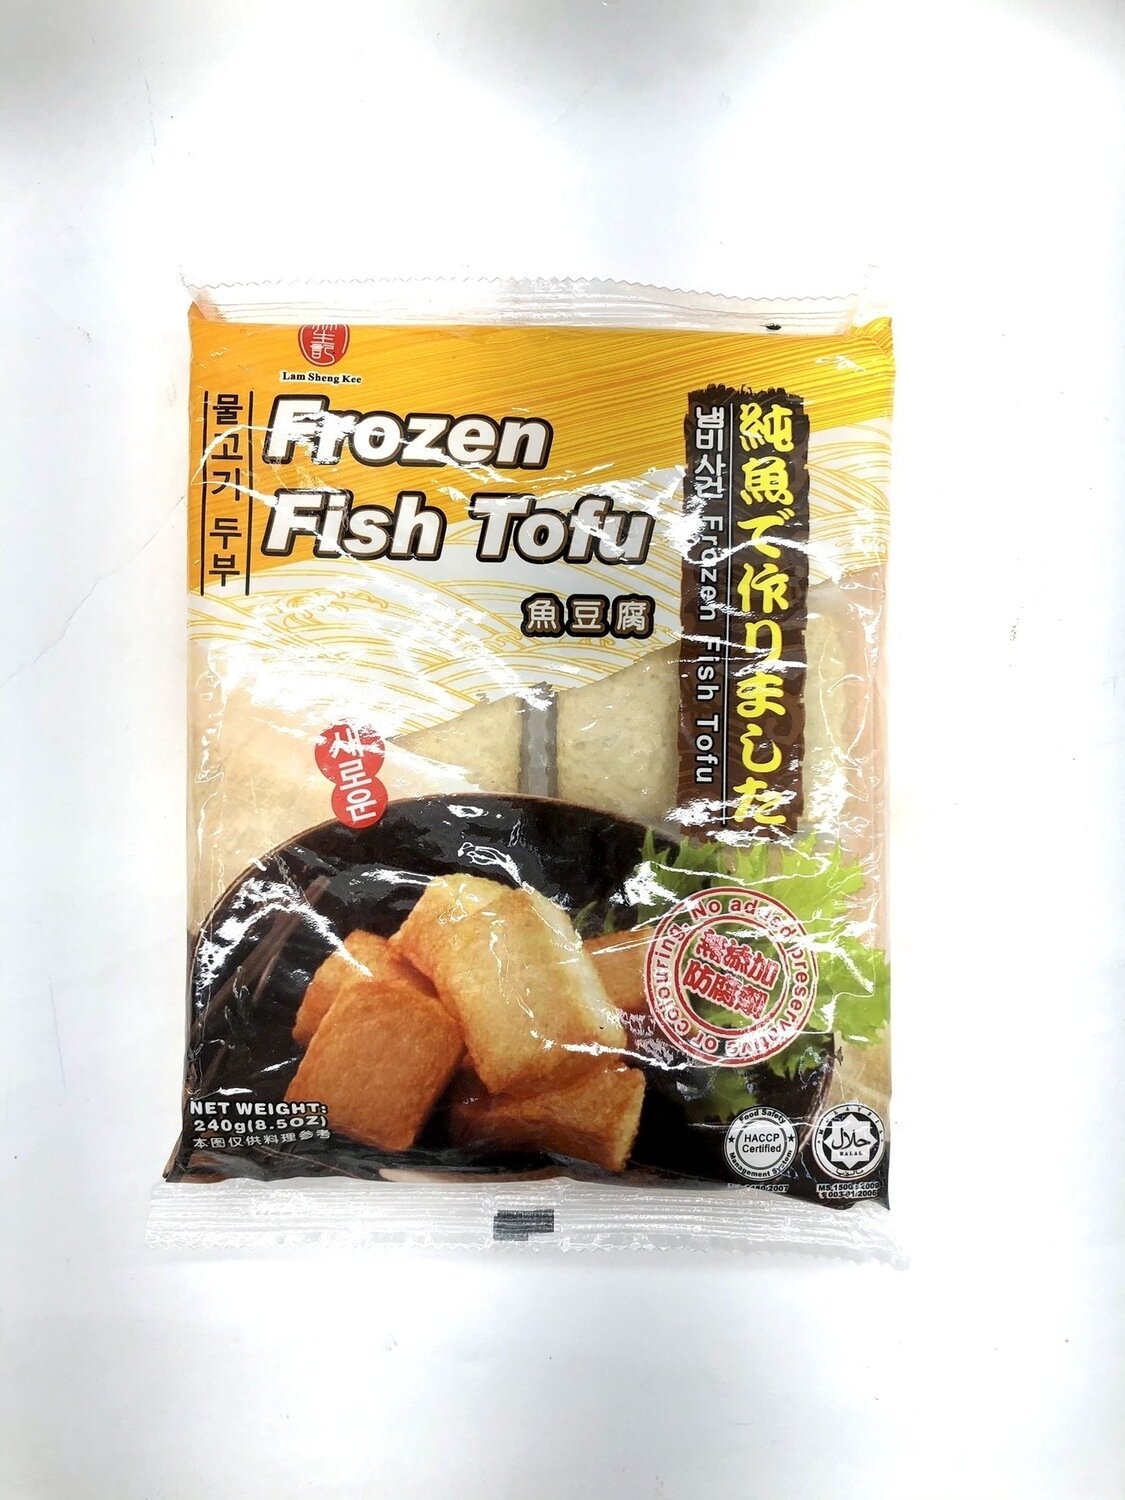 林生记鱼豆腐 Lam Sheng Kee Frozen Fish Tofu~240g(8.5oz)